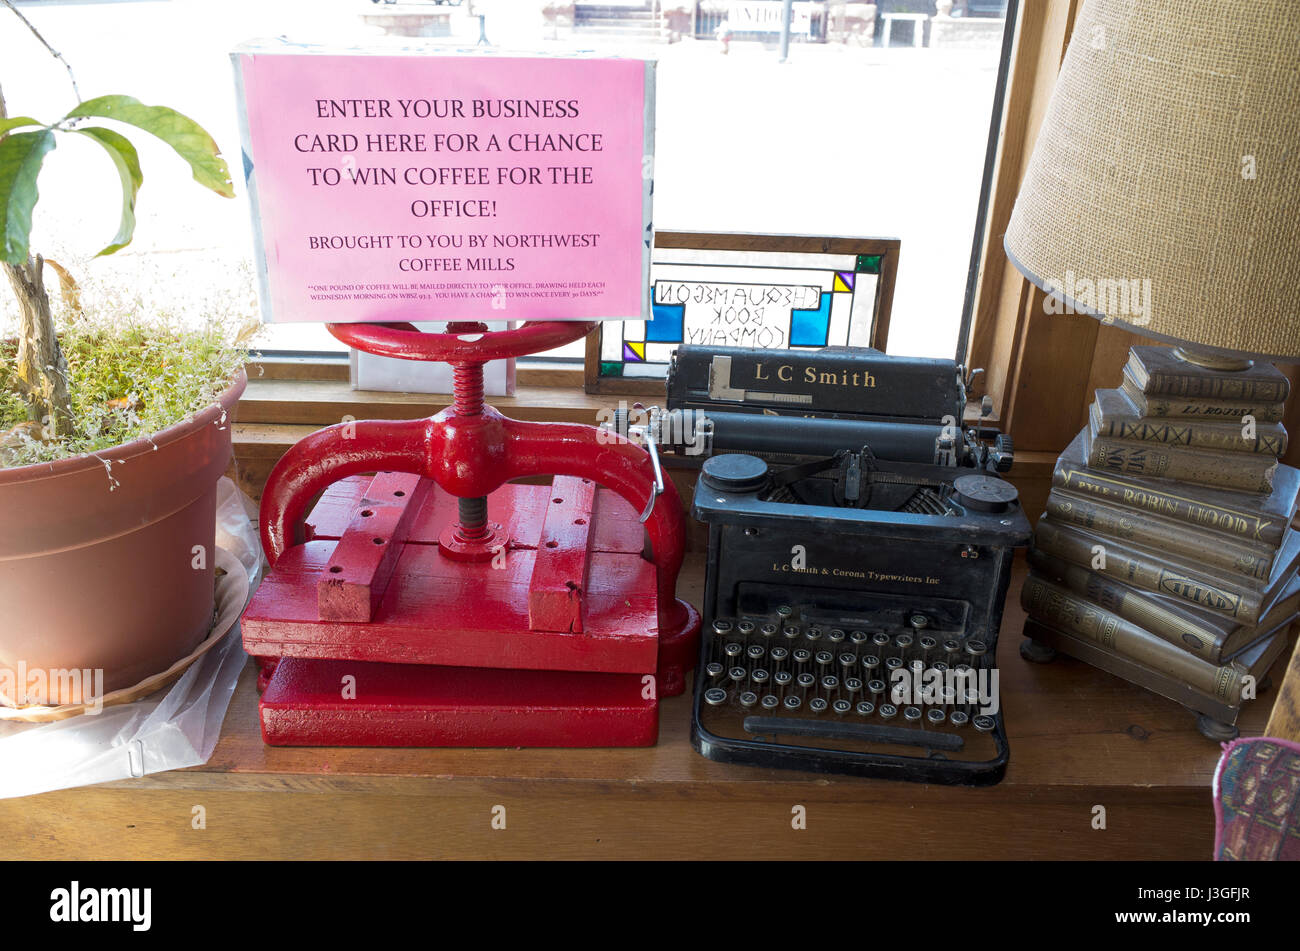 Antike Schreibmaschine, Buch Presse, Pflanze und Lampe auf dem Display in der Buchhandlung Chequamegon Buch & Coffee Company.  Washburn Wisconsin WI USA Stockfoto